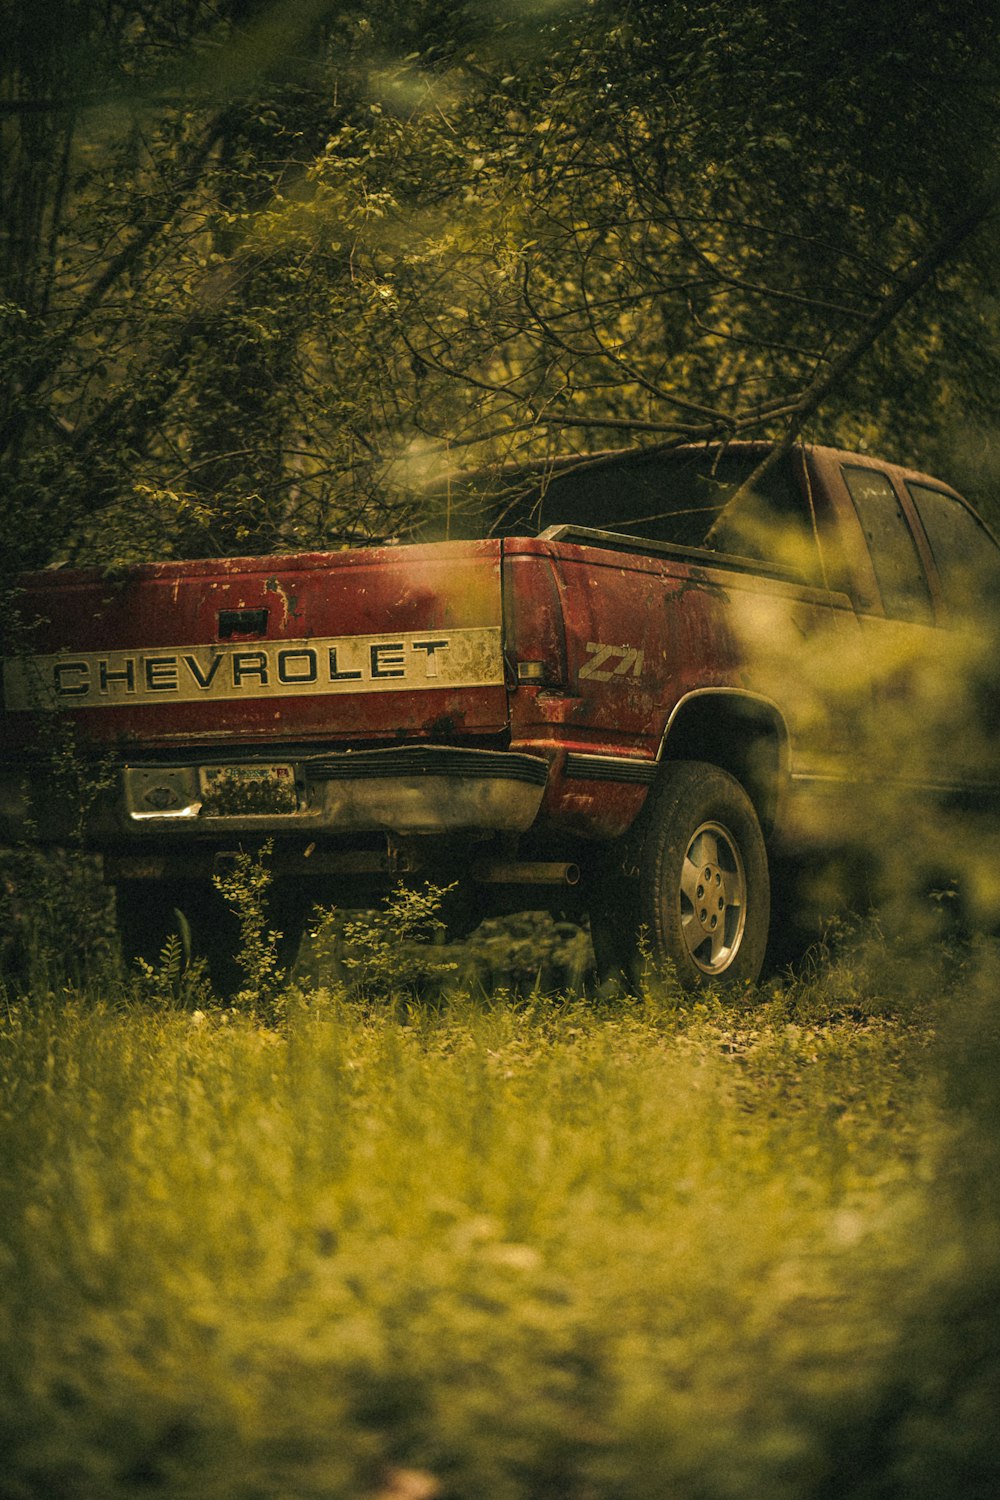 Una camioneta Chevrolet roja estacionada en el bosque